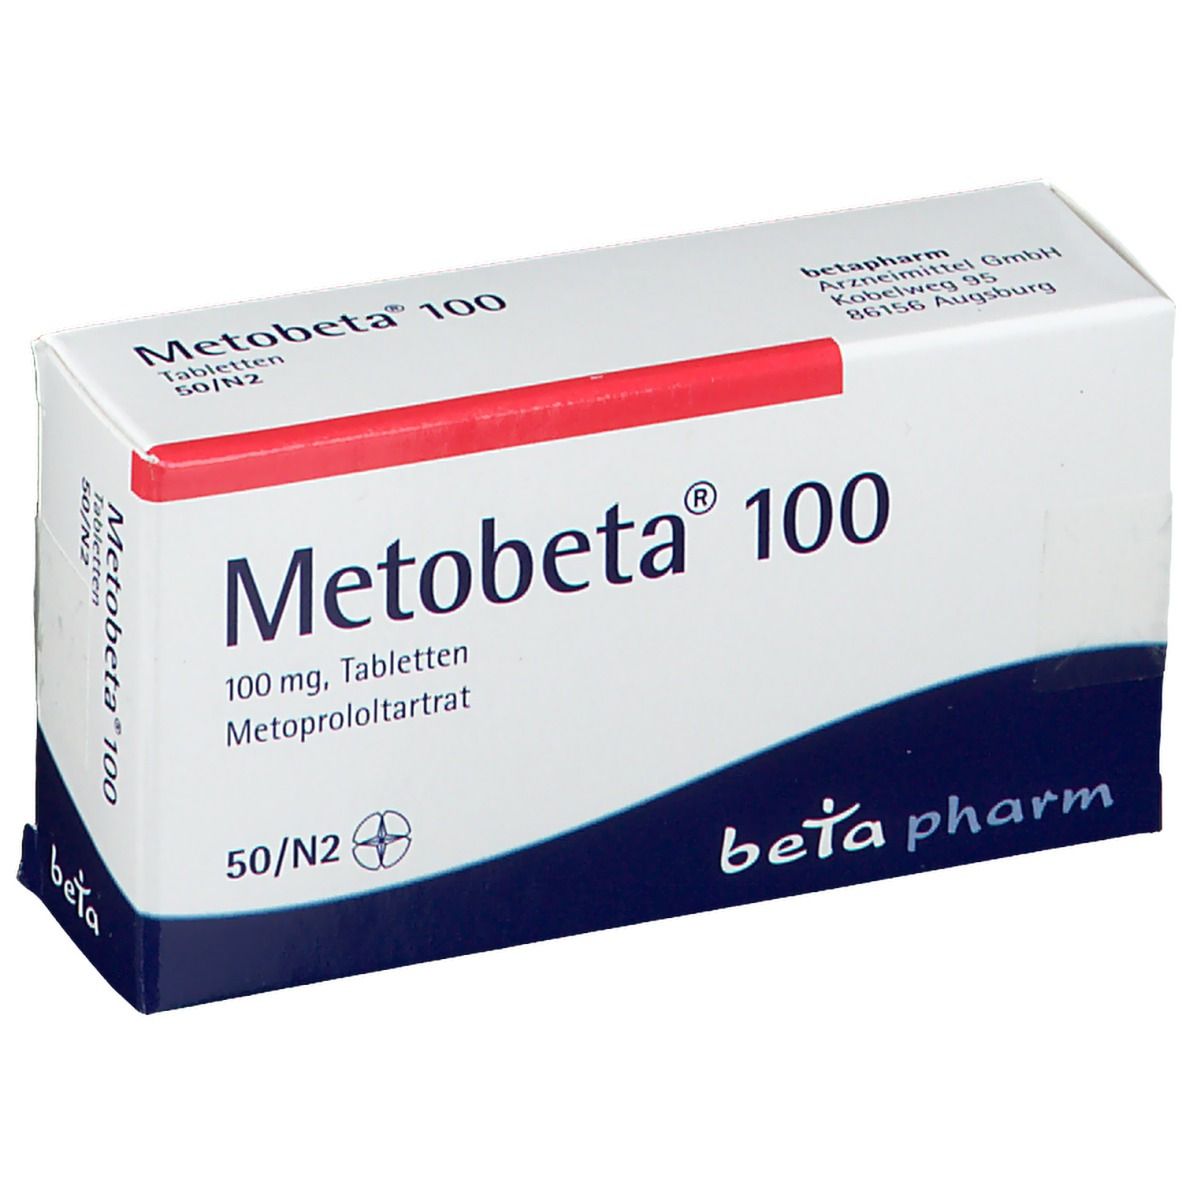 Metobeta® 100